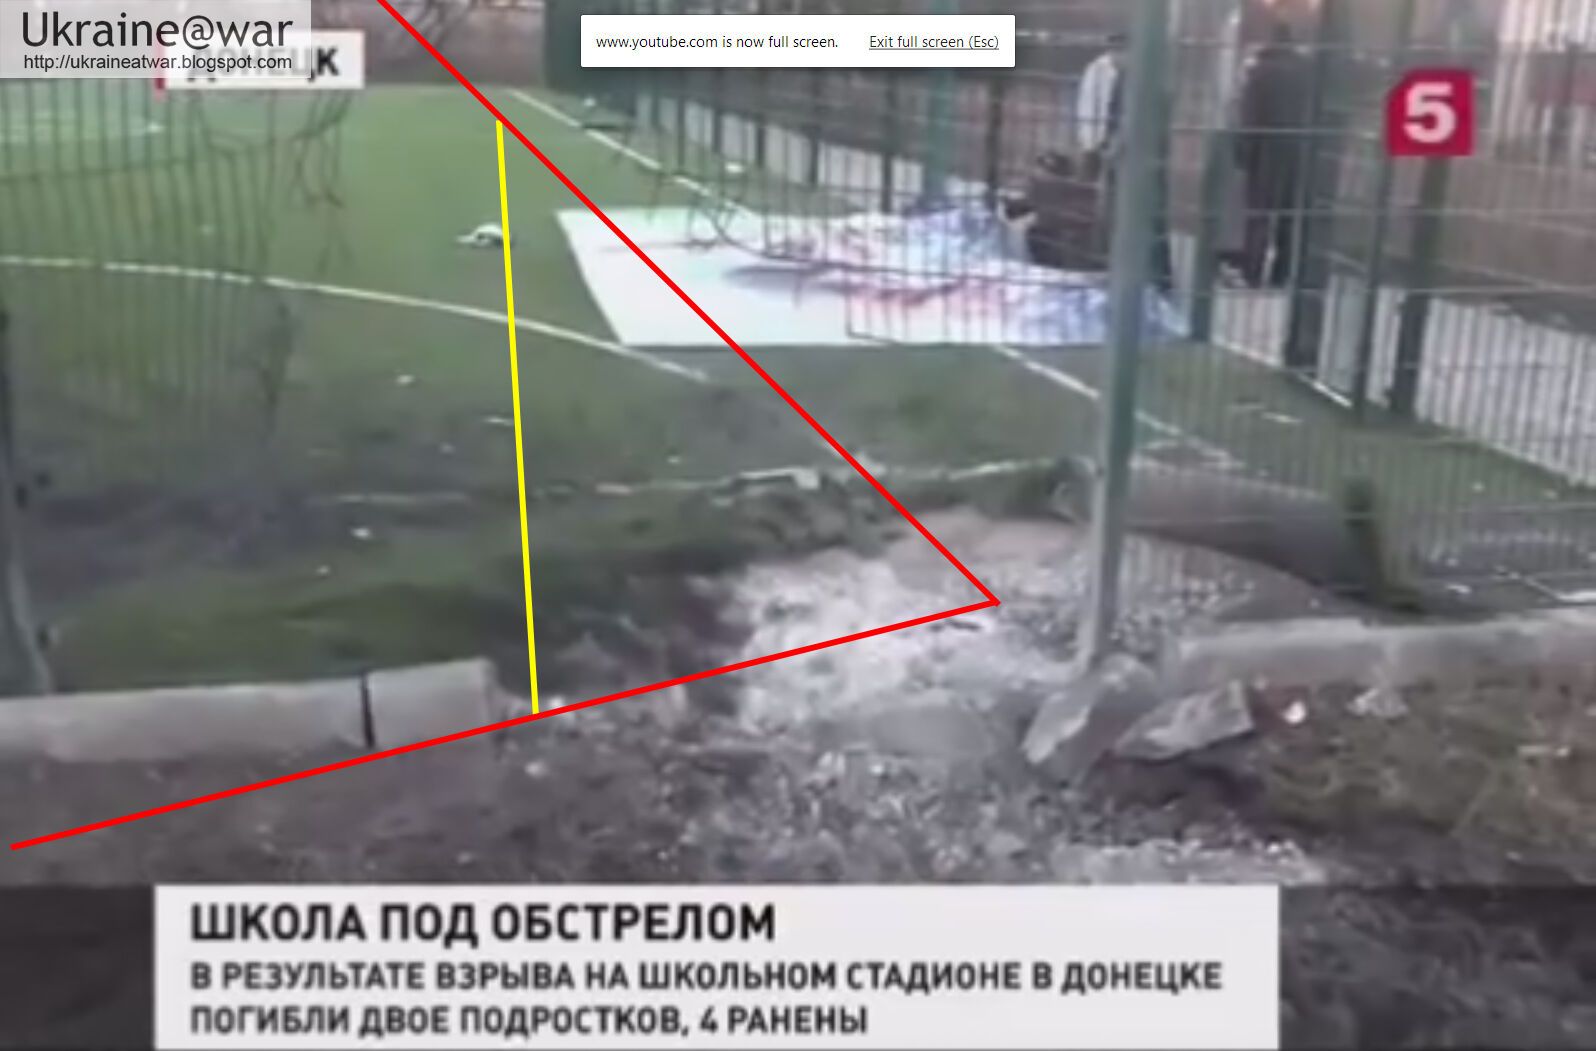 Снаряд, від якого загинули діти в Донецьку, випущений з контрольованою терористами території - МЗС